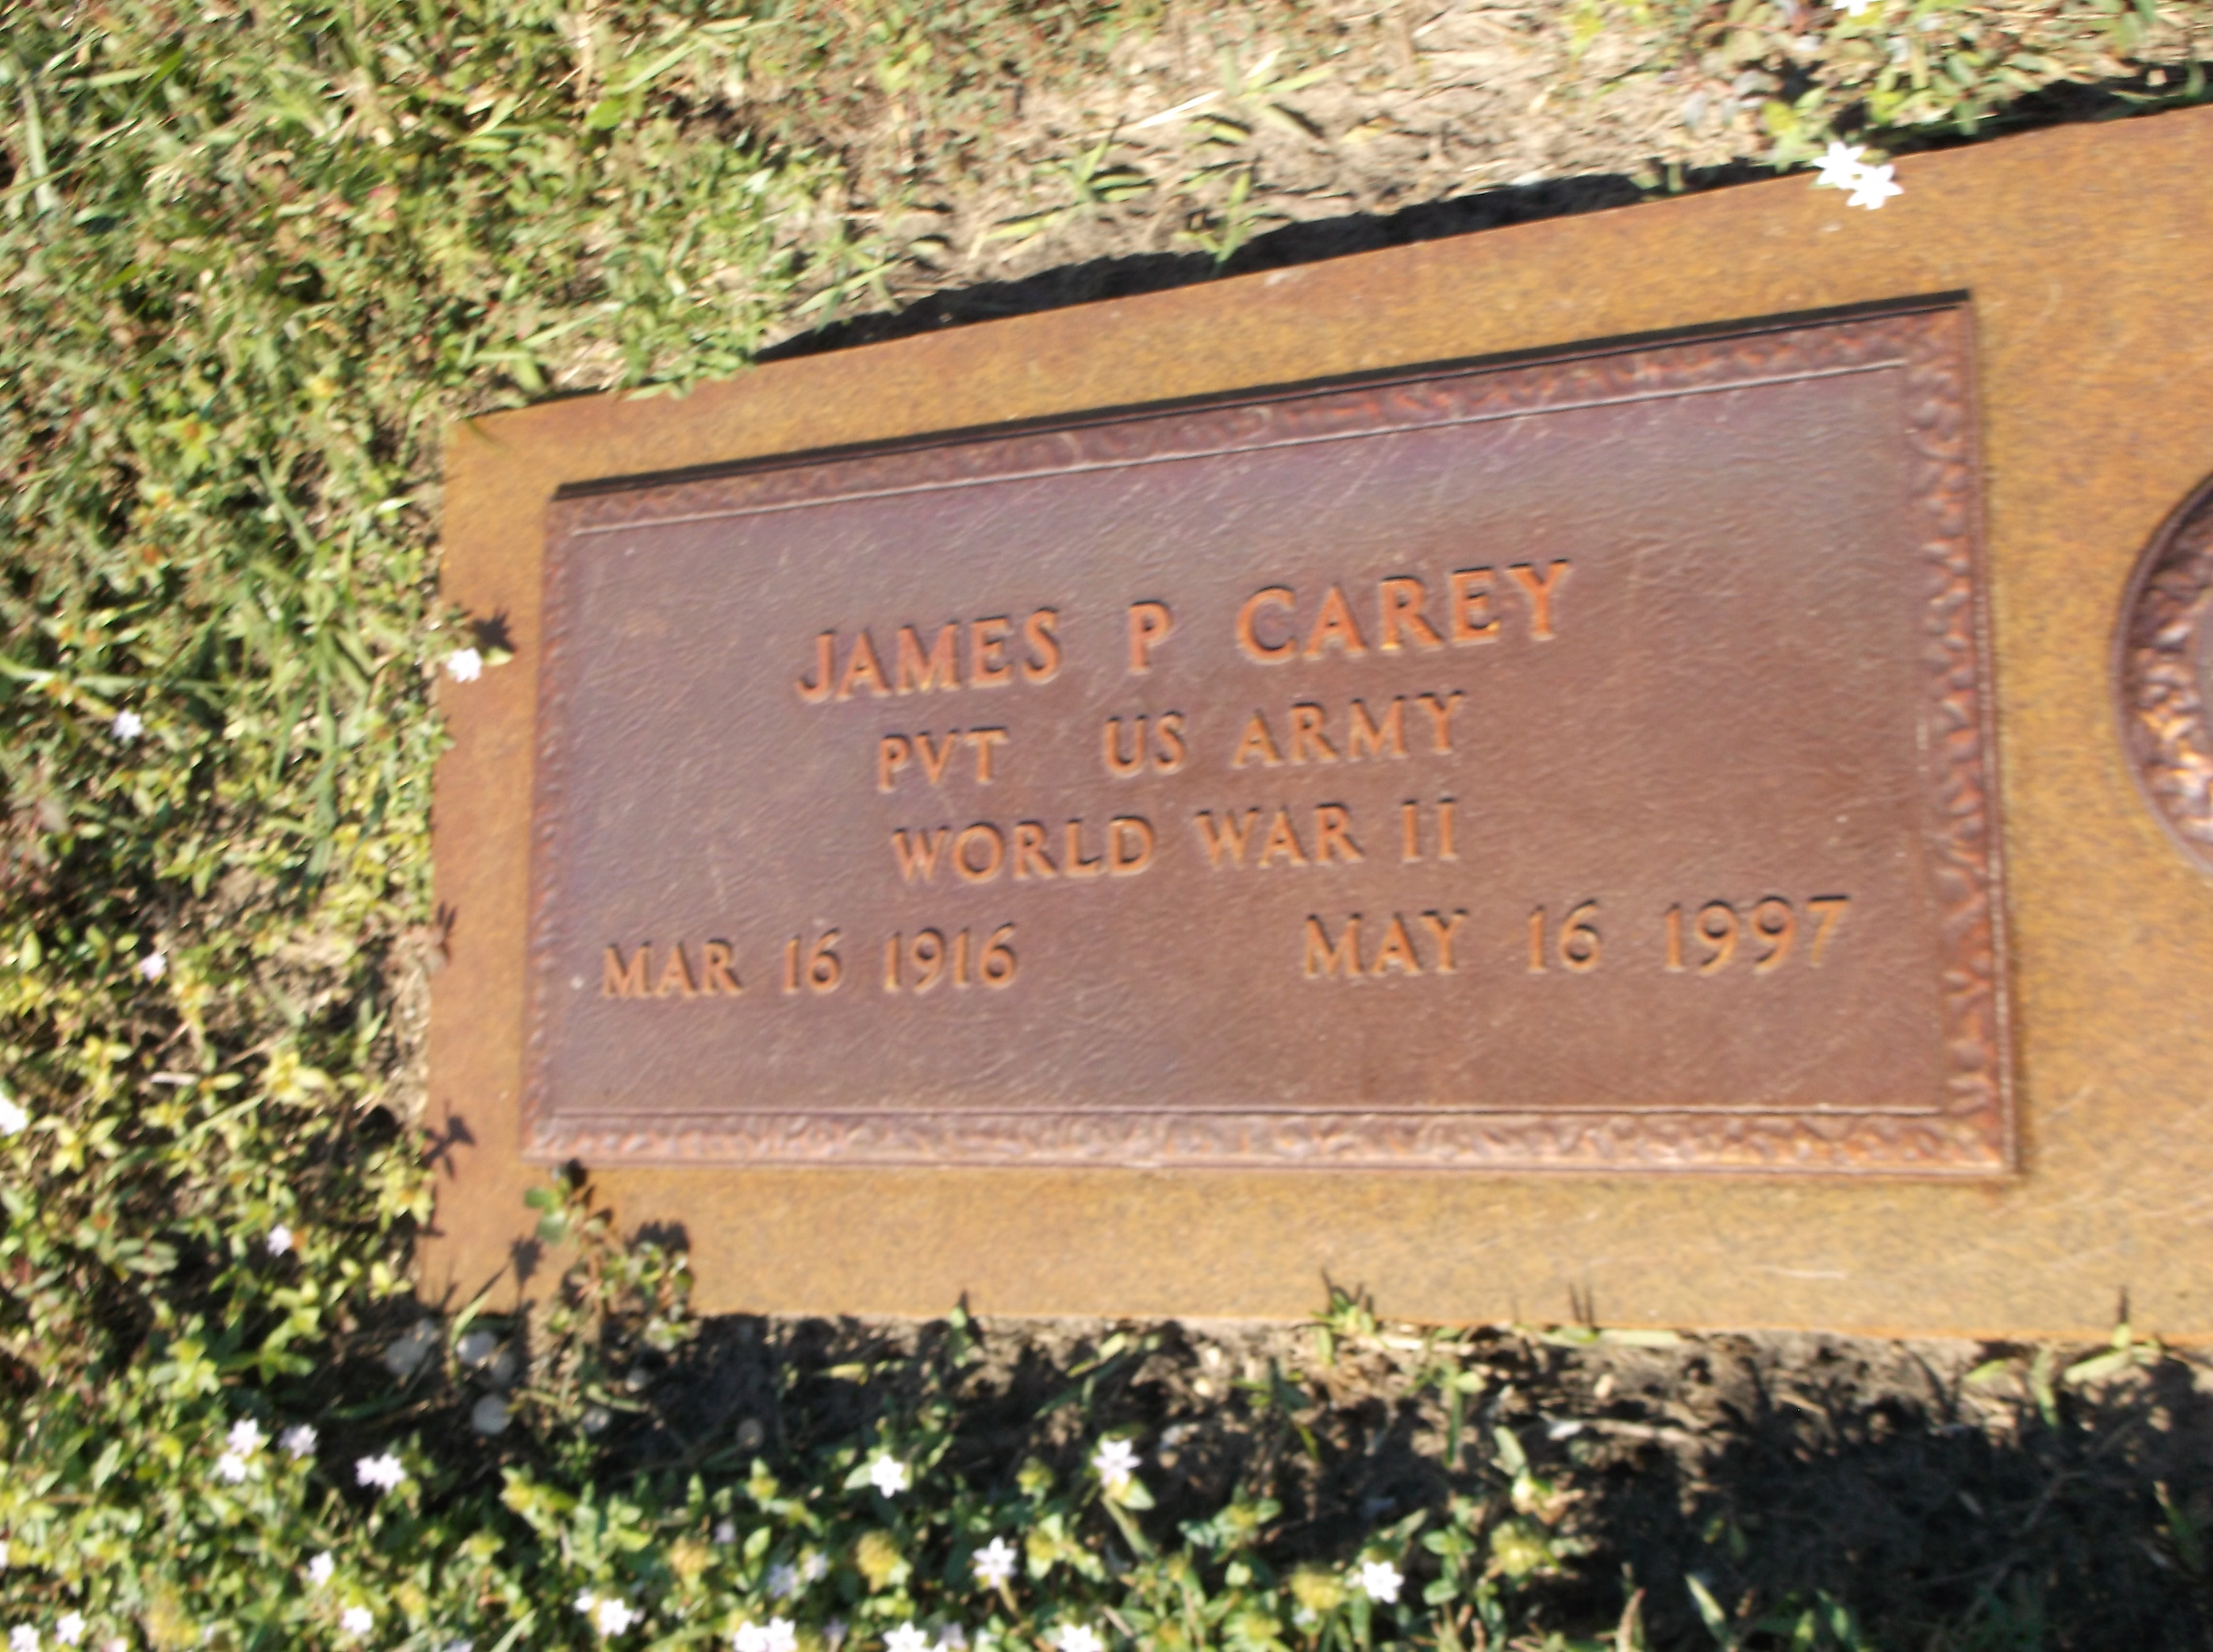 James P Carey